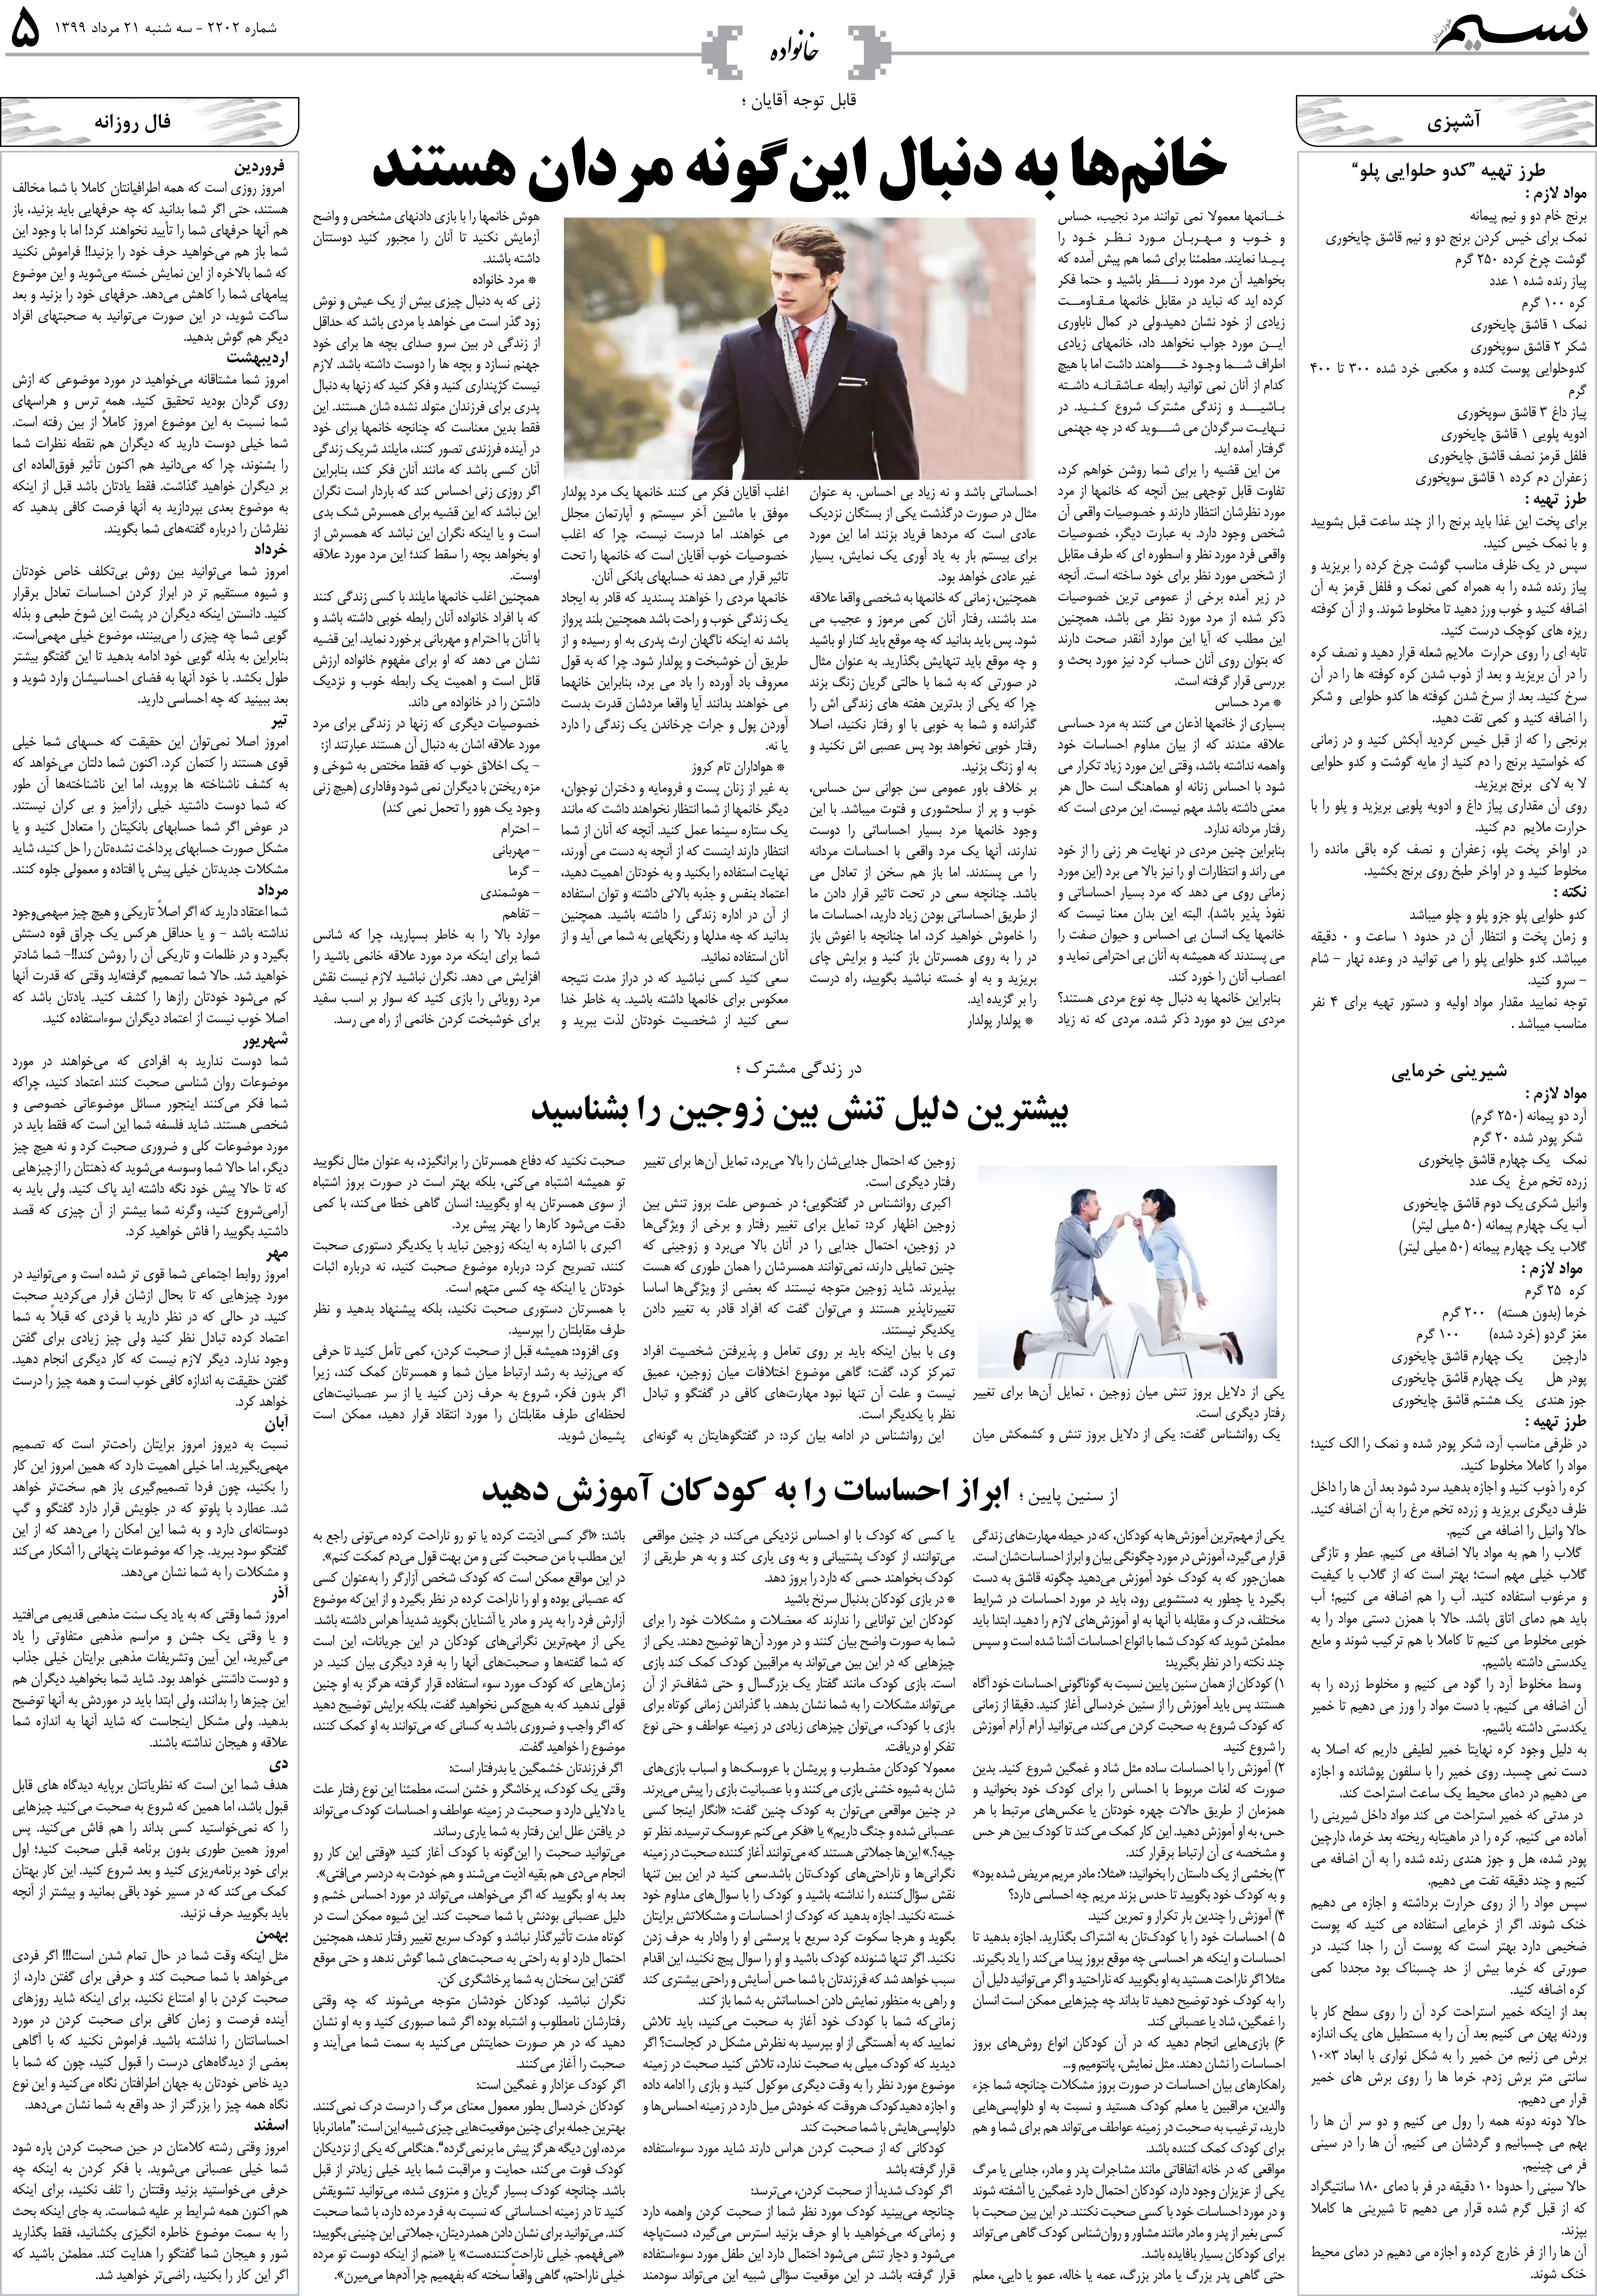 صفحه خانواده روزنامه نسیم شماره 2202